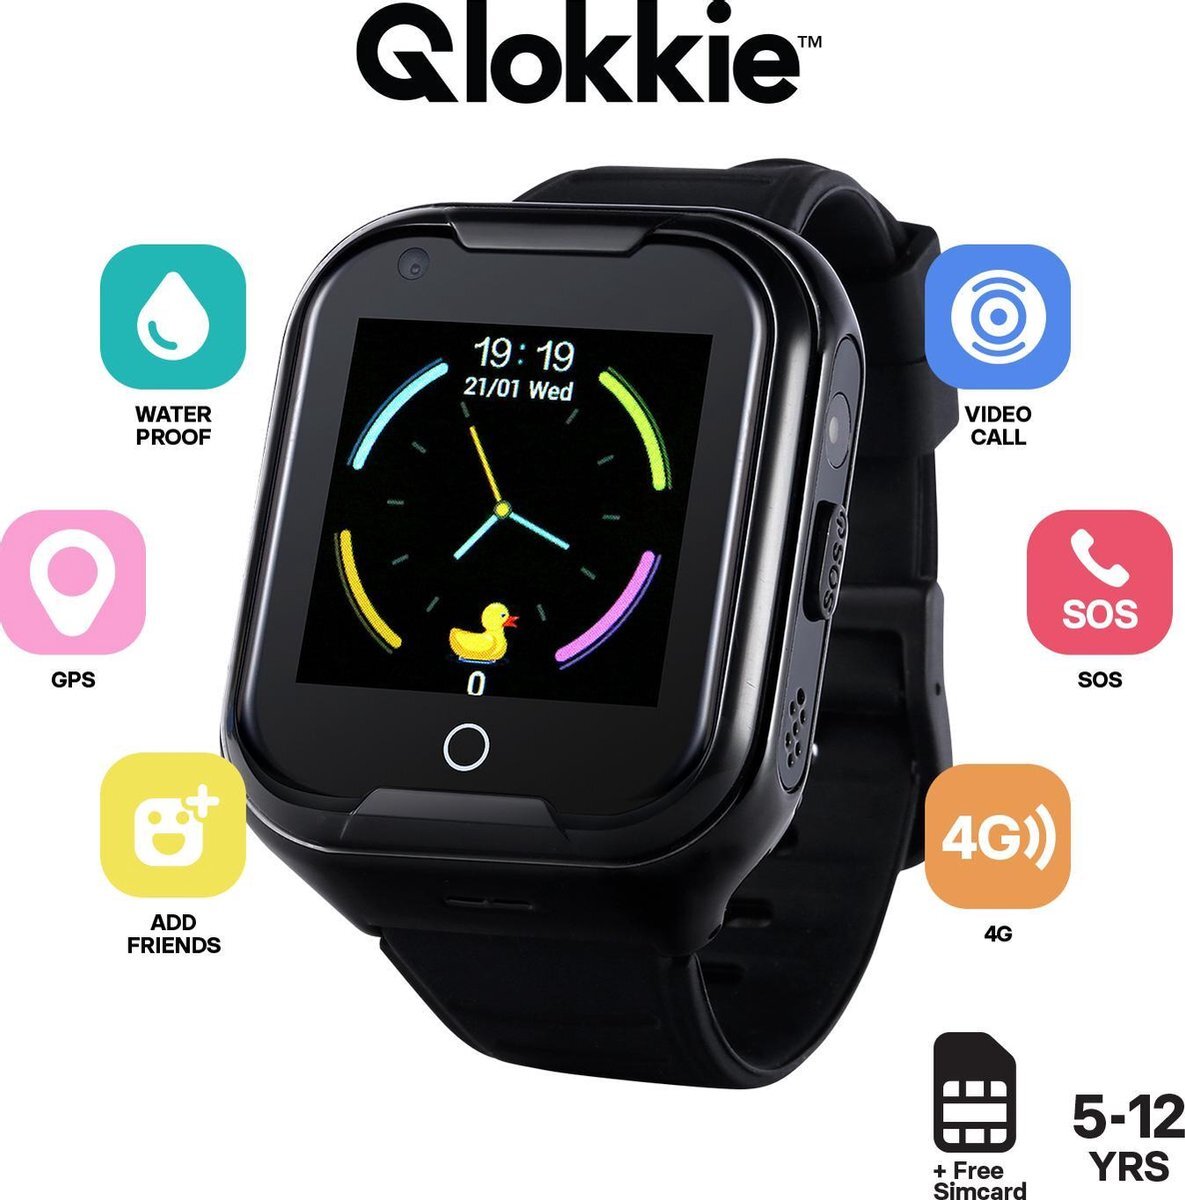 Qlokkie GPS Horloge kind - Smartwatch kinderen - GPS Tracker - 4G - SOS Functie - HD Video Call - Waterdicht - Inclusief simkaart - Kiddo 11 - Zwart smartwatch kopen? | Kieskeurig.nl | helpt kiezen